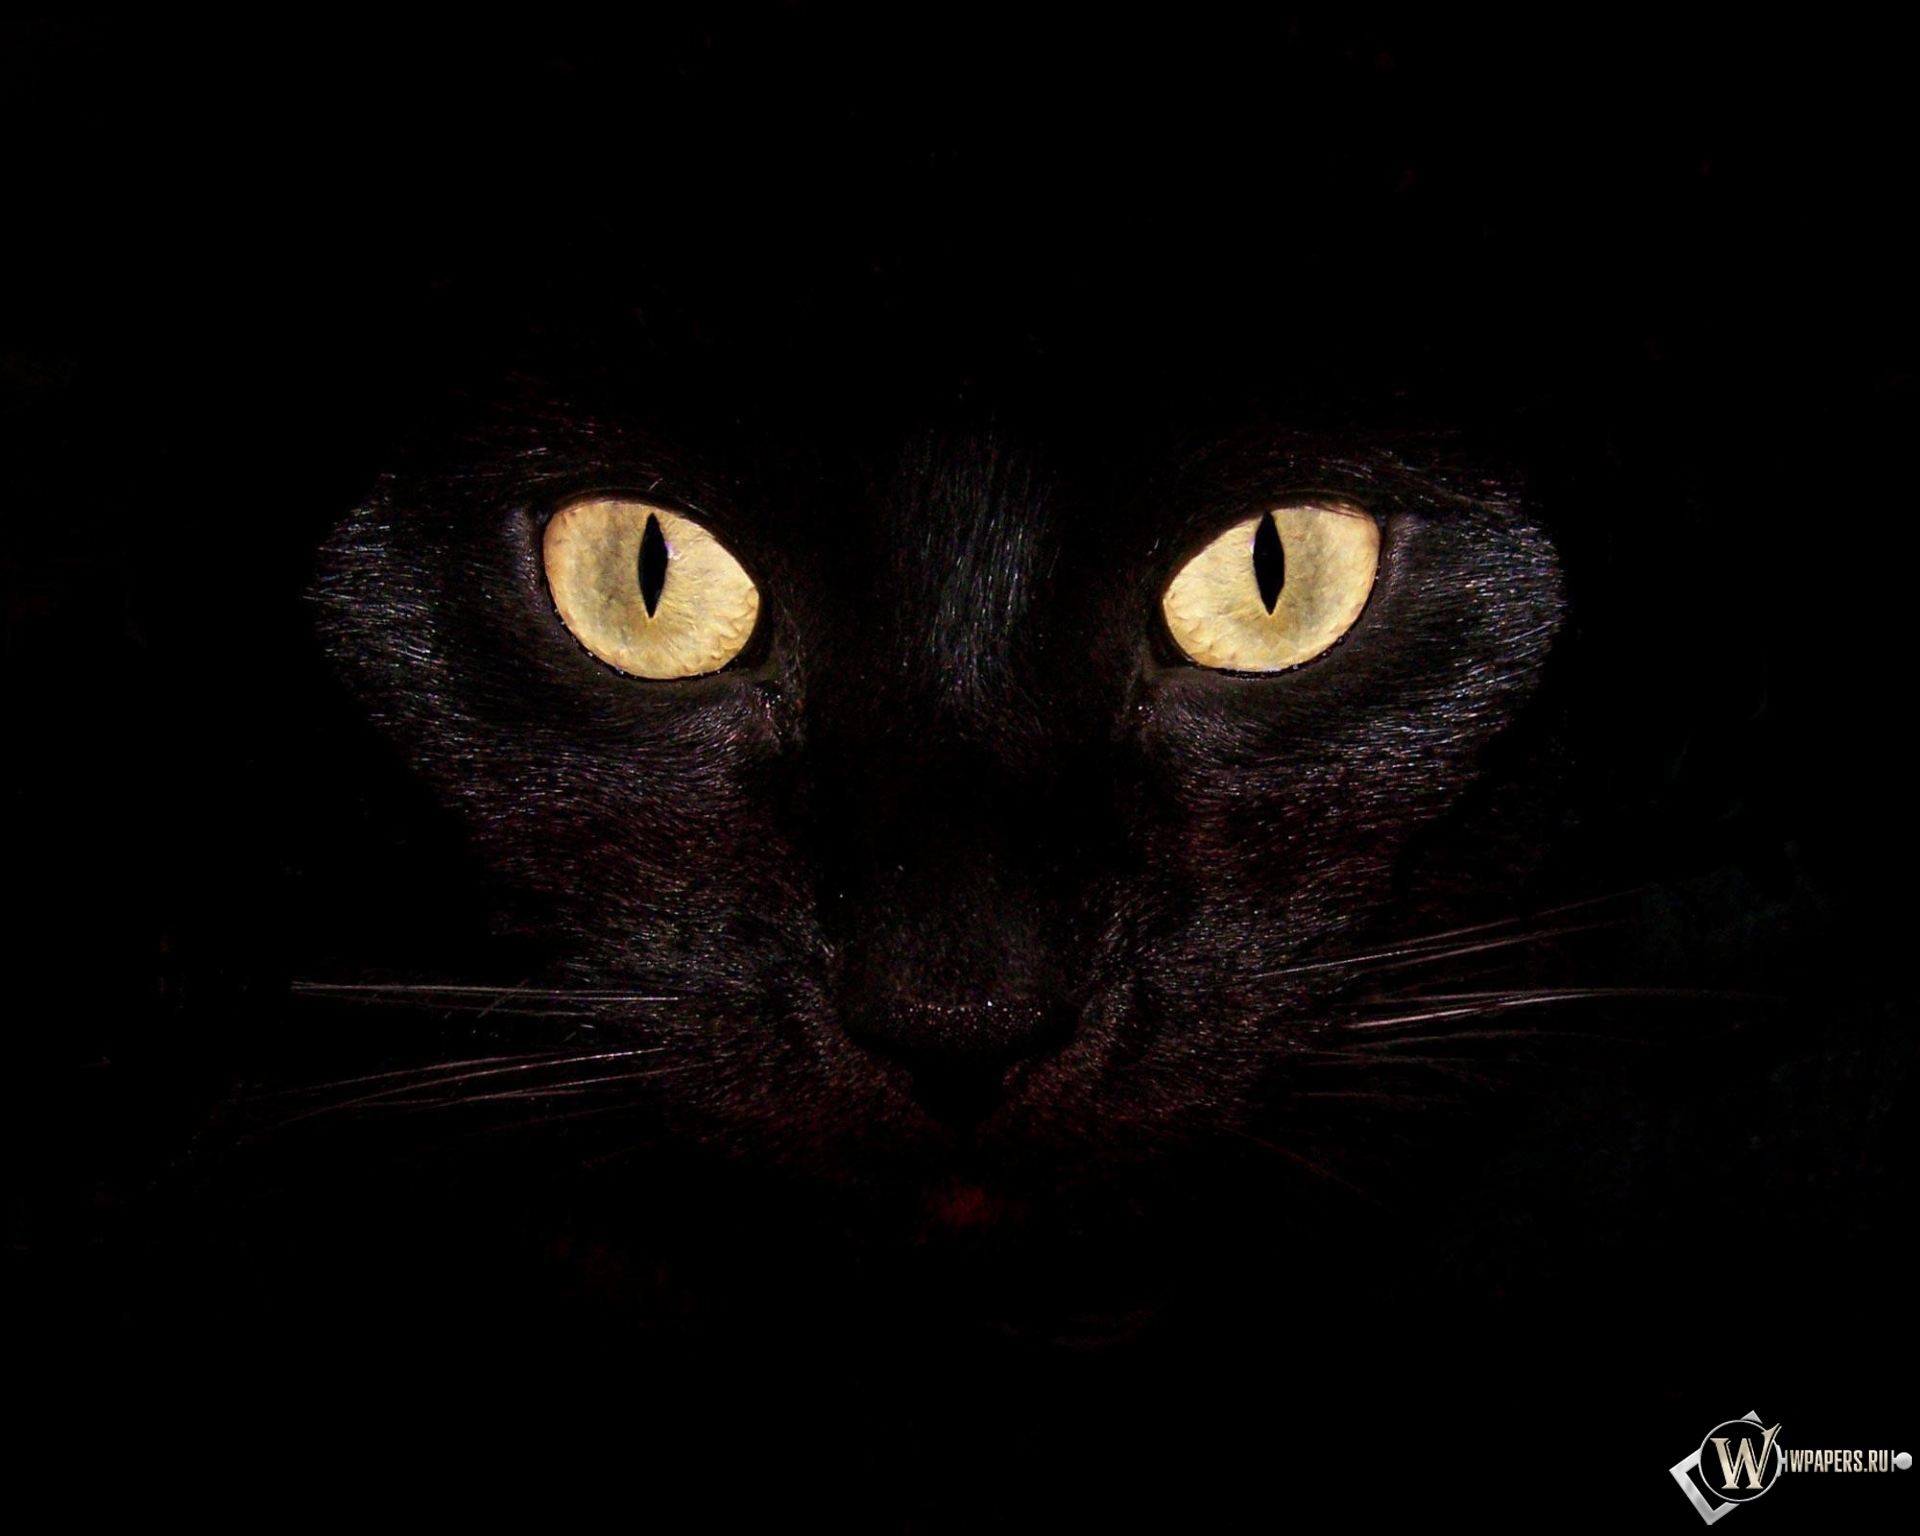 Черная кошка на чернофм фоне 1920x1536